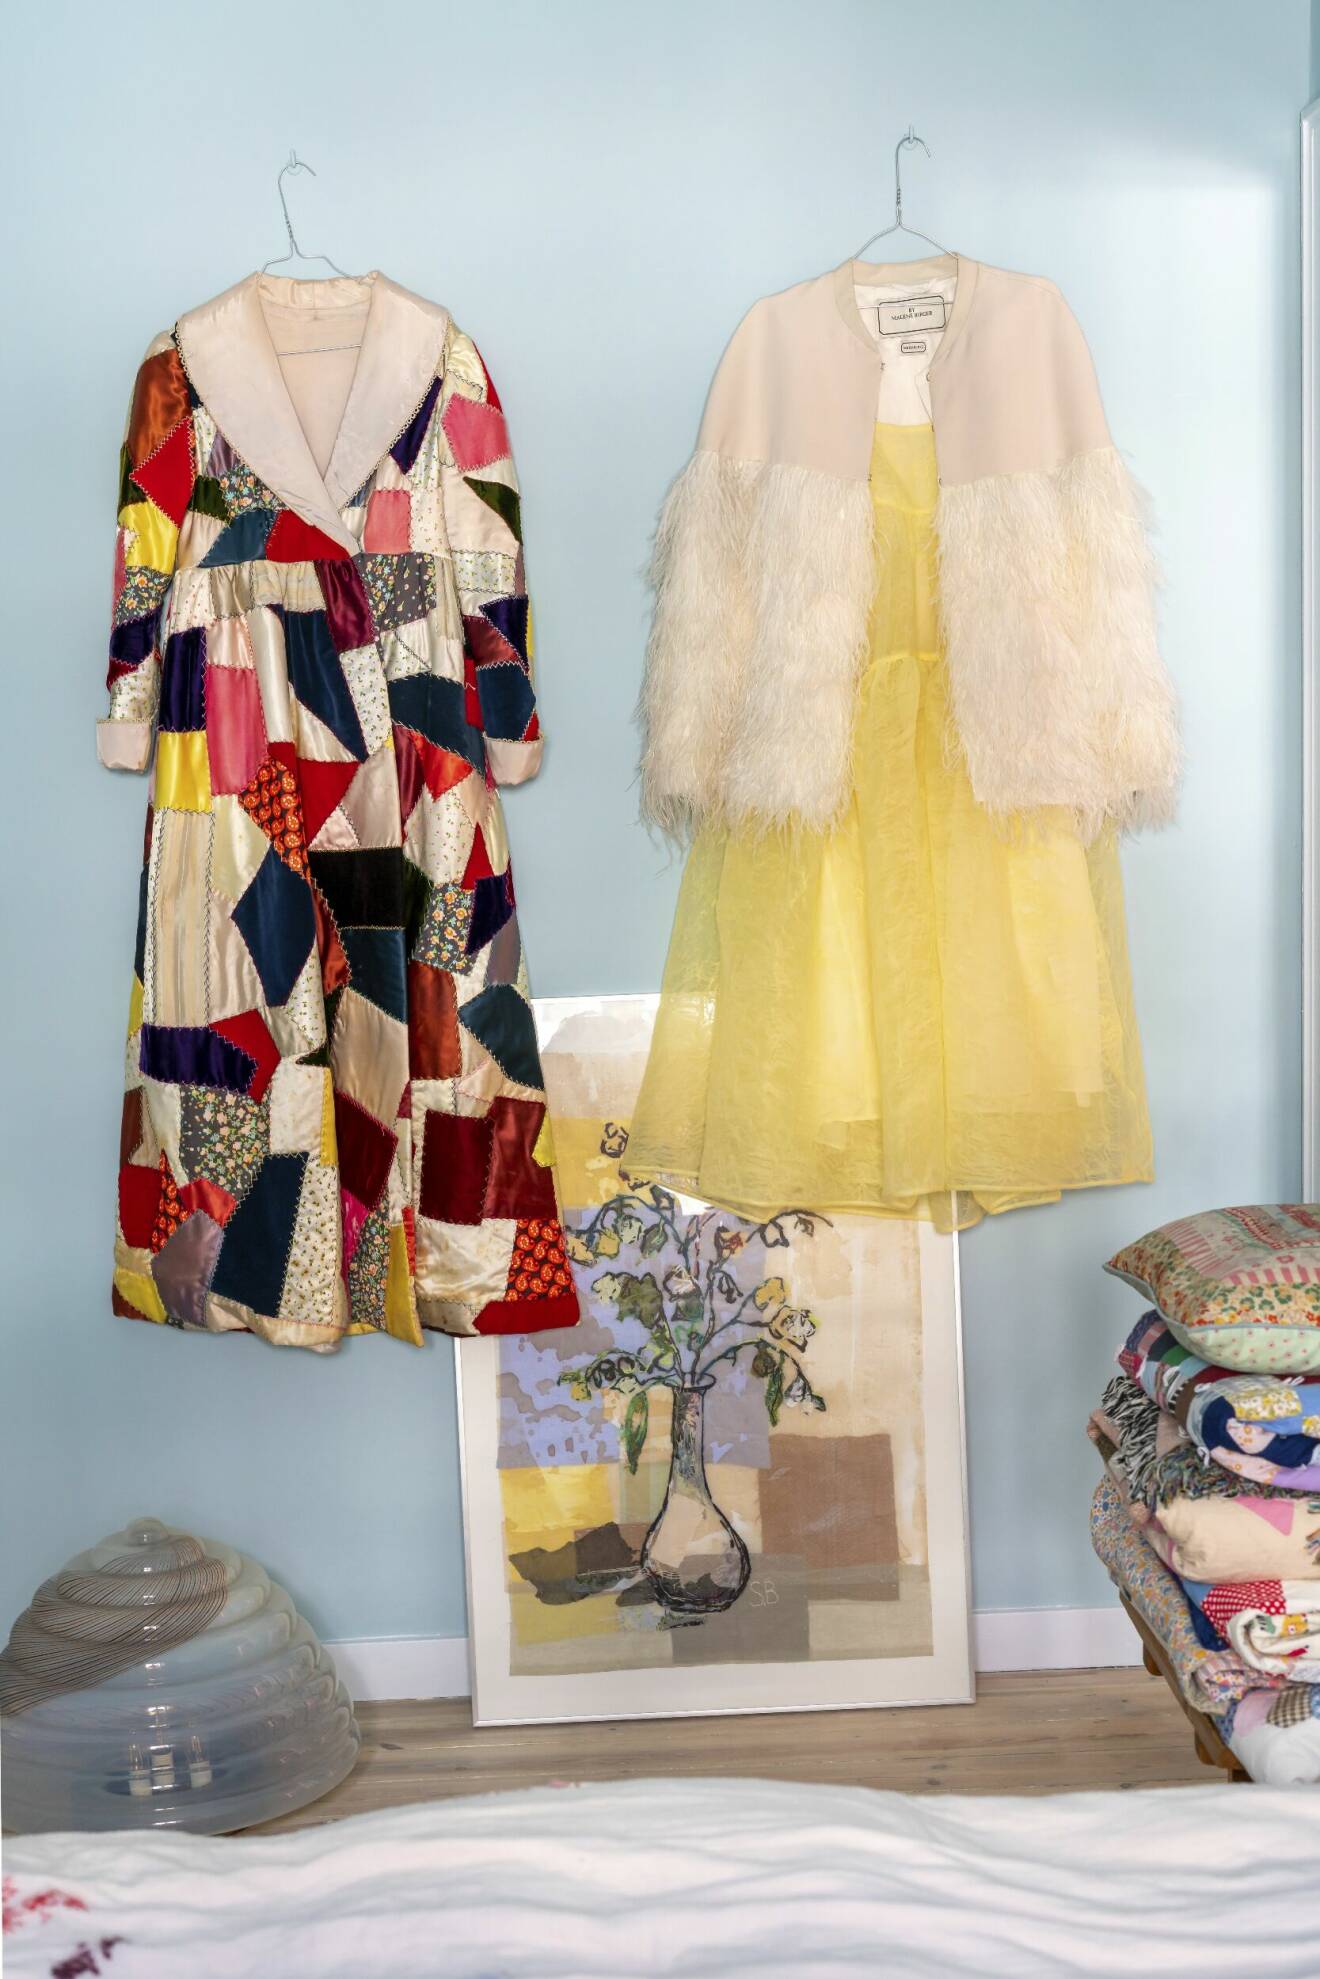 Muranolampa i glas och vintageklänningar